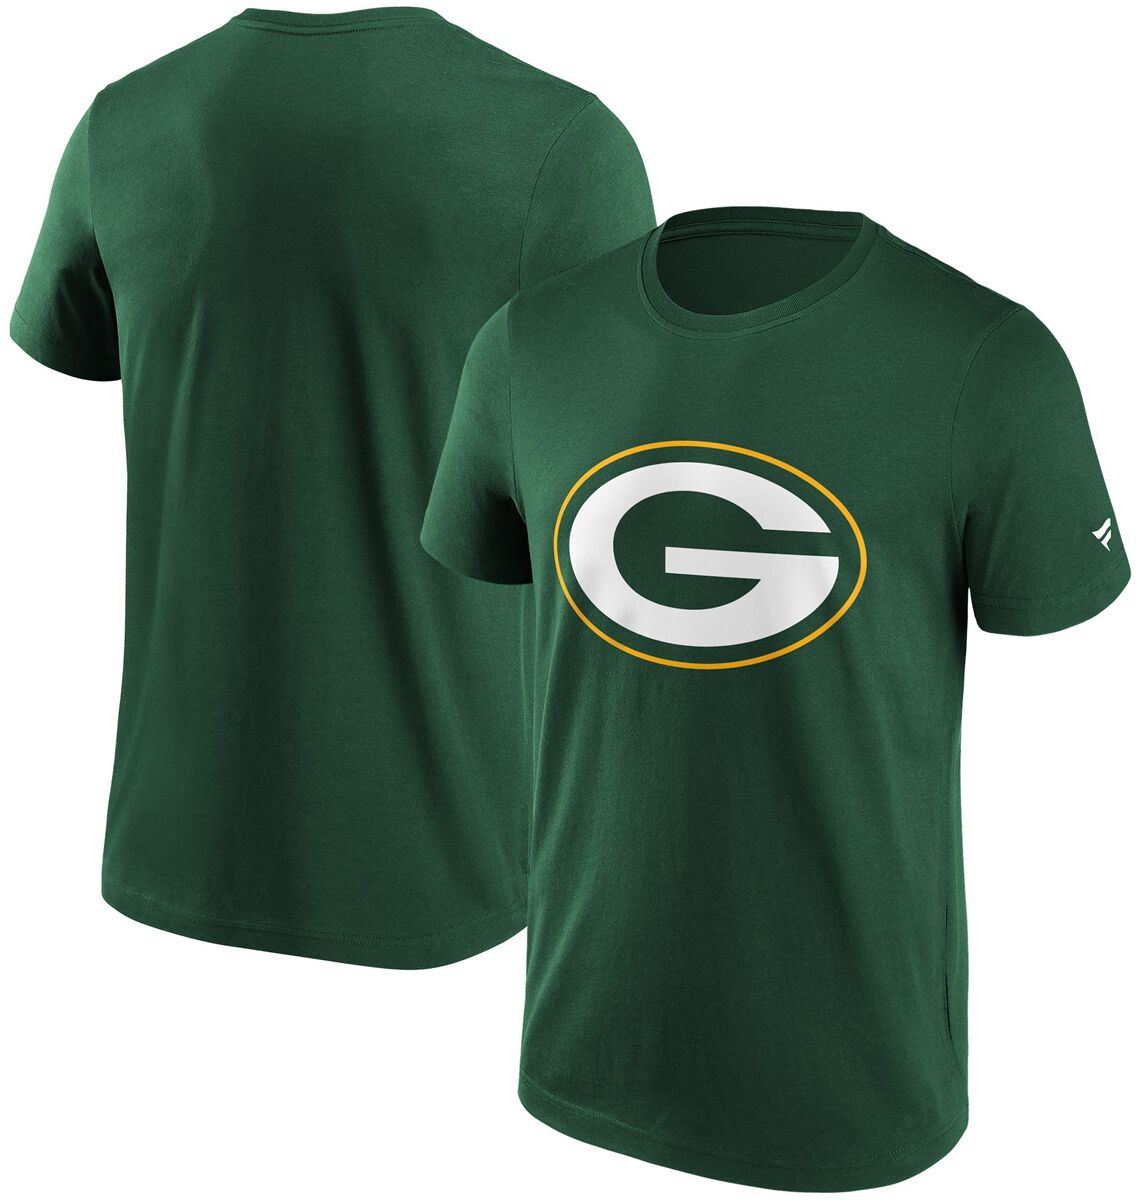 Fanatics T-Shirt - Green Bay Packers Logo - S bis XL - für Männer - Größe S - dunkelgrün